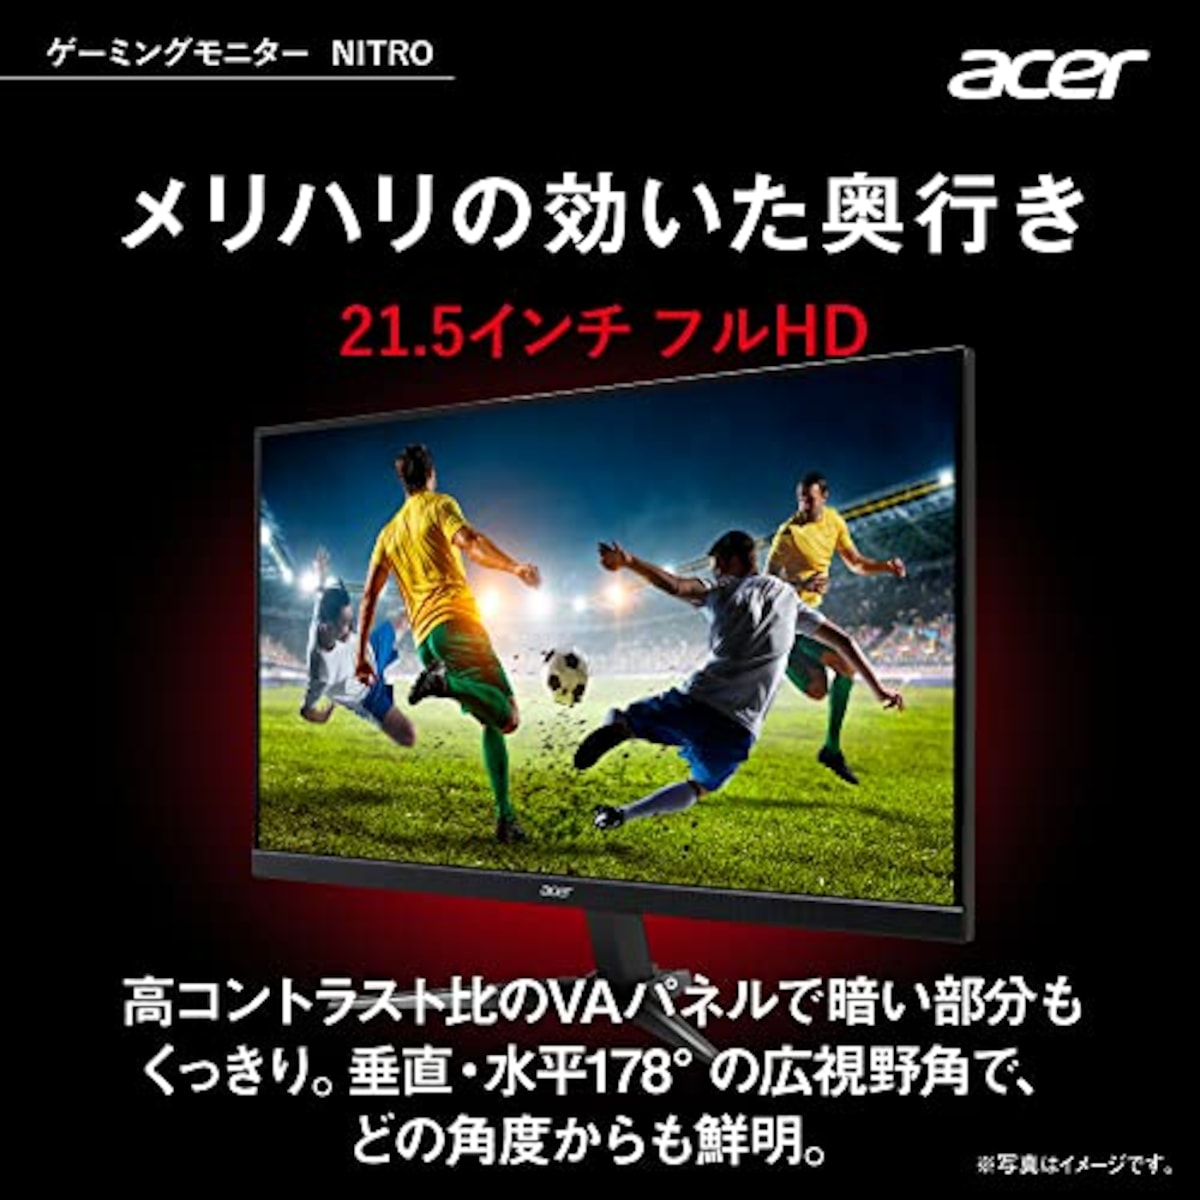  日本エイサー 【Amazon.co.jp限定】 Acer Nitro ゲーミングモニター 21.5インチ VA 非光沢 フルHD 100Hz 1ms(VRB) HDMI ミニD-Sub15 VESAマウント対応 スピーカー内蔵 ヘッドホン端子 AMD FreeSync QG221QHbmiix PC/PS4/Switch向き画像3 